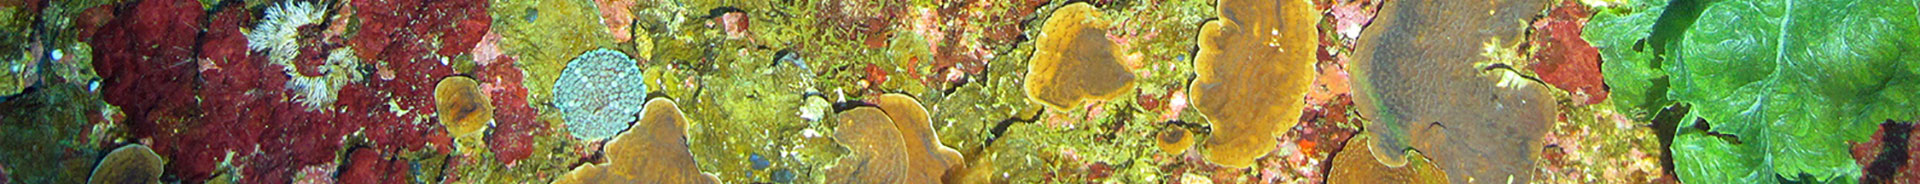 Mesophotic Corals